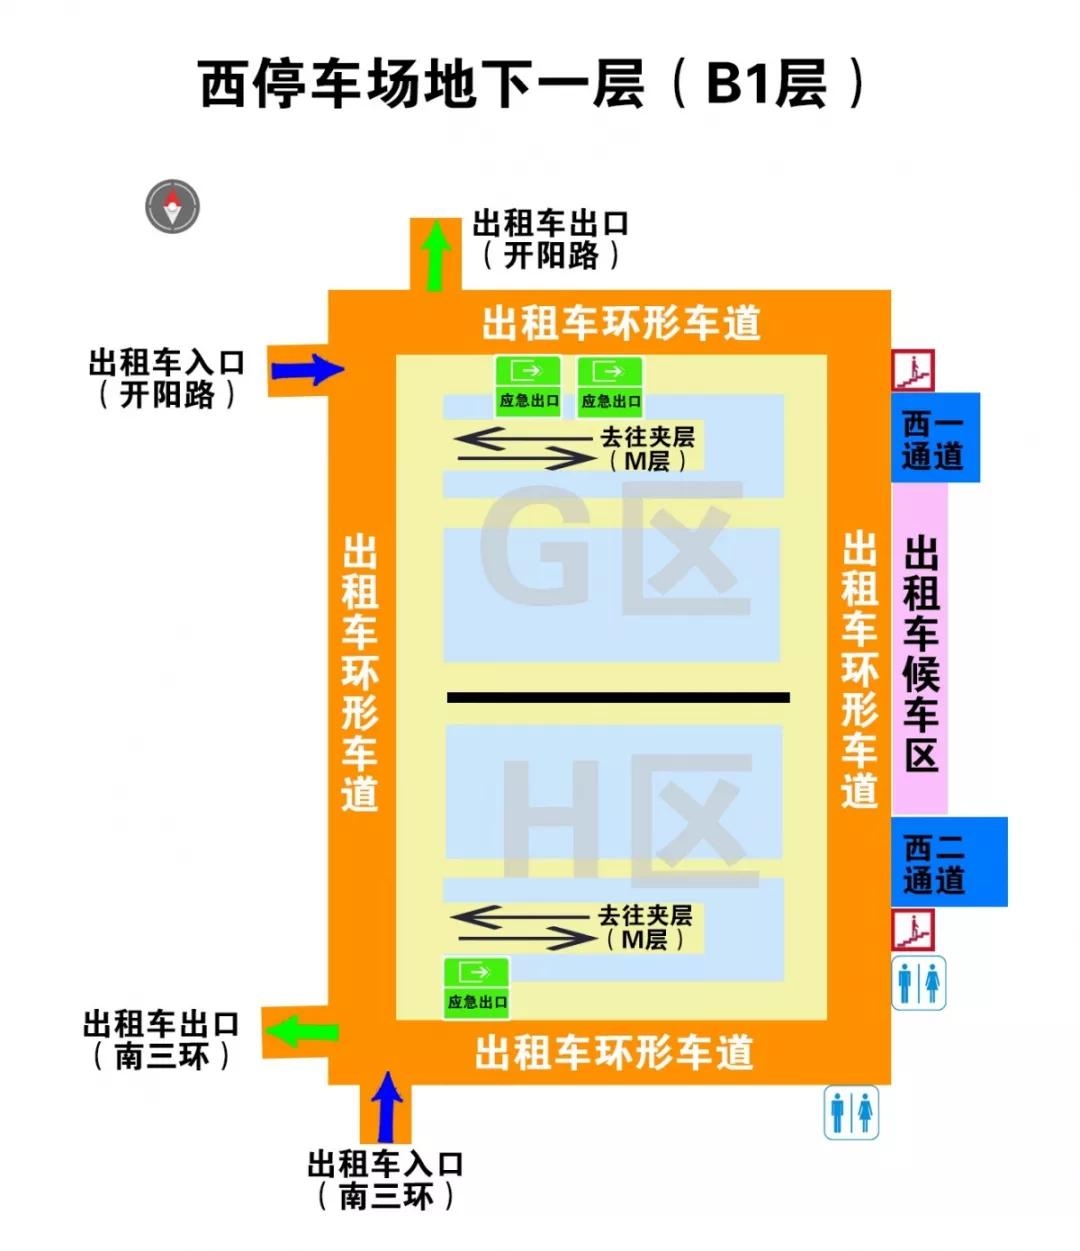 北京南站停车场系统-北京西奥泰达科技有限公司